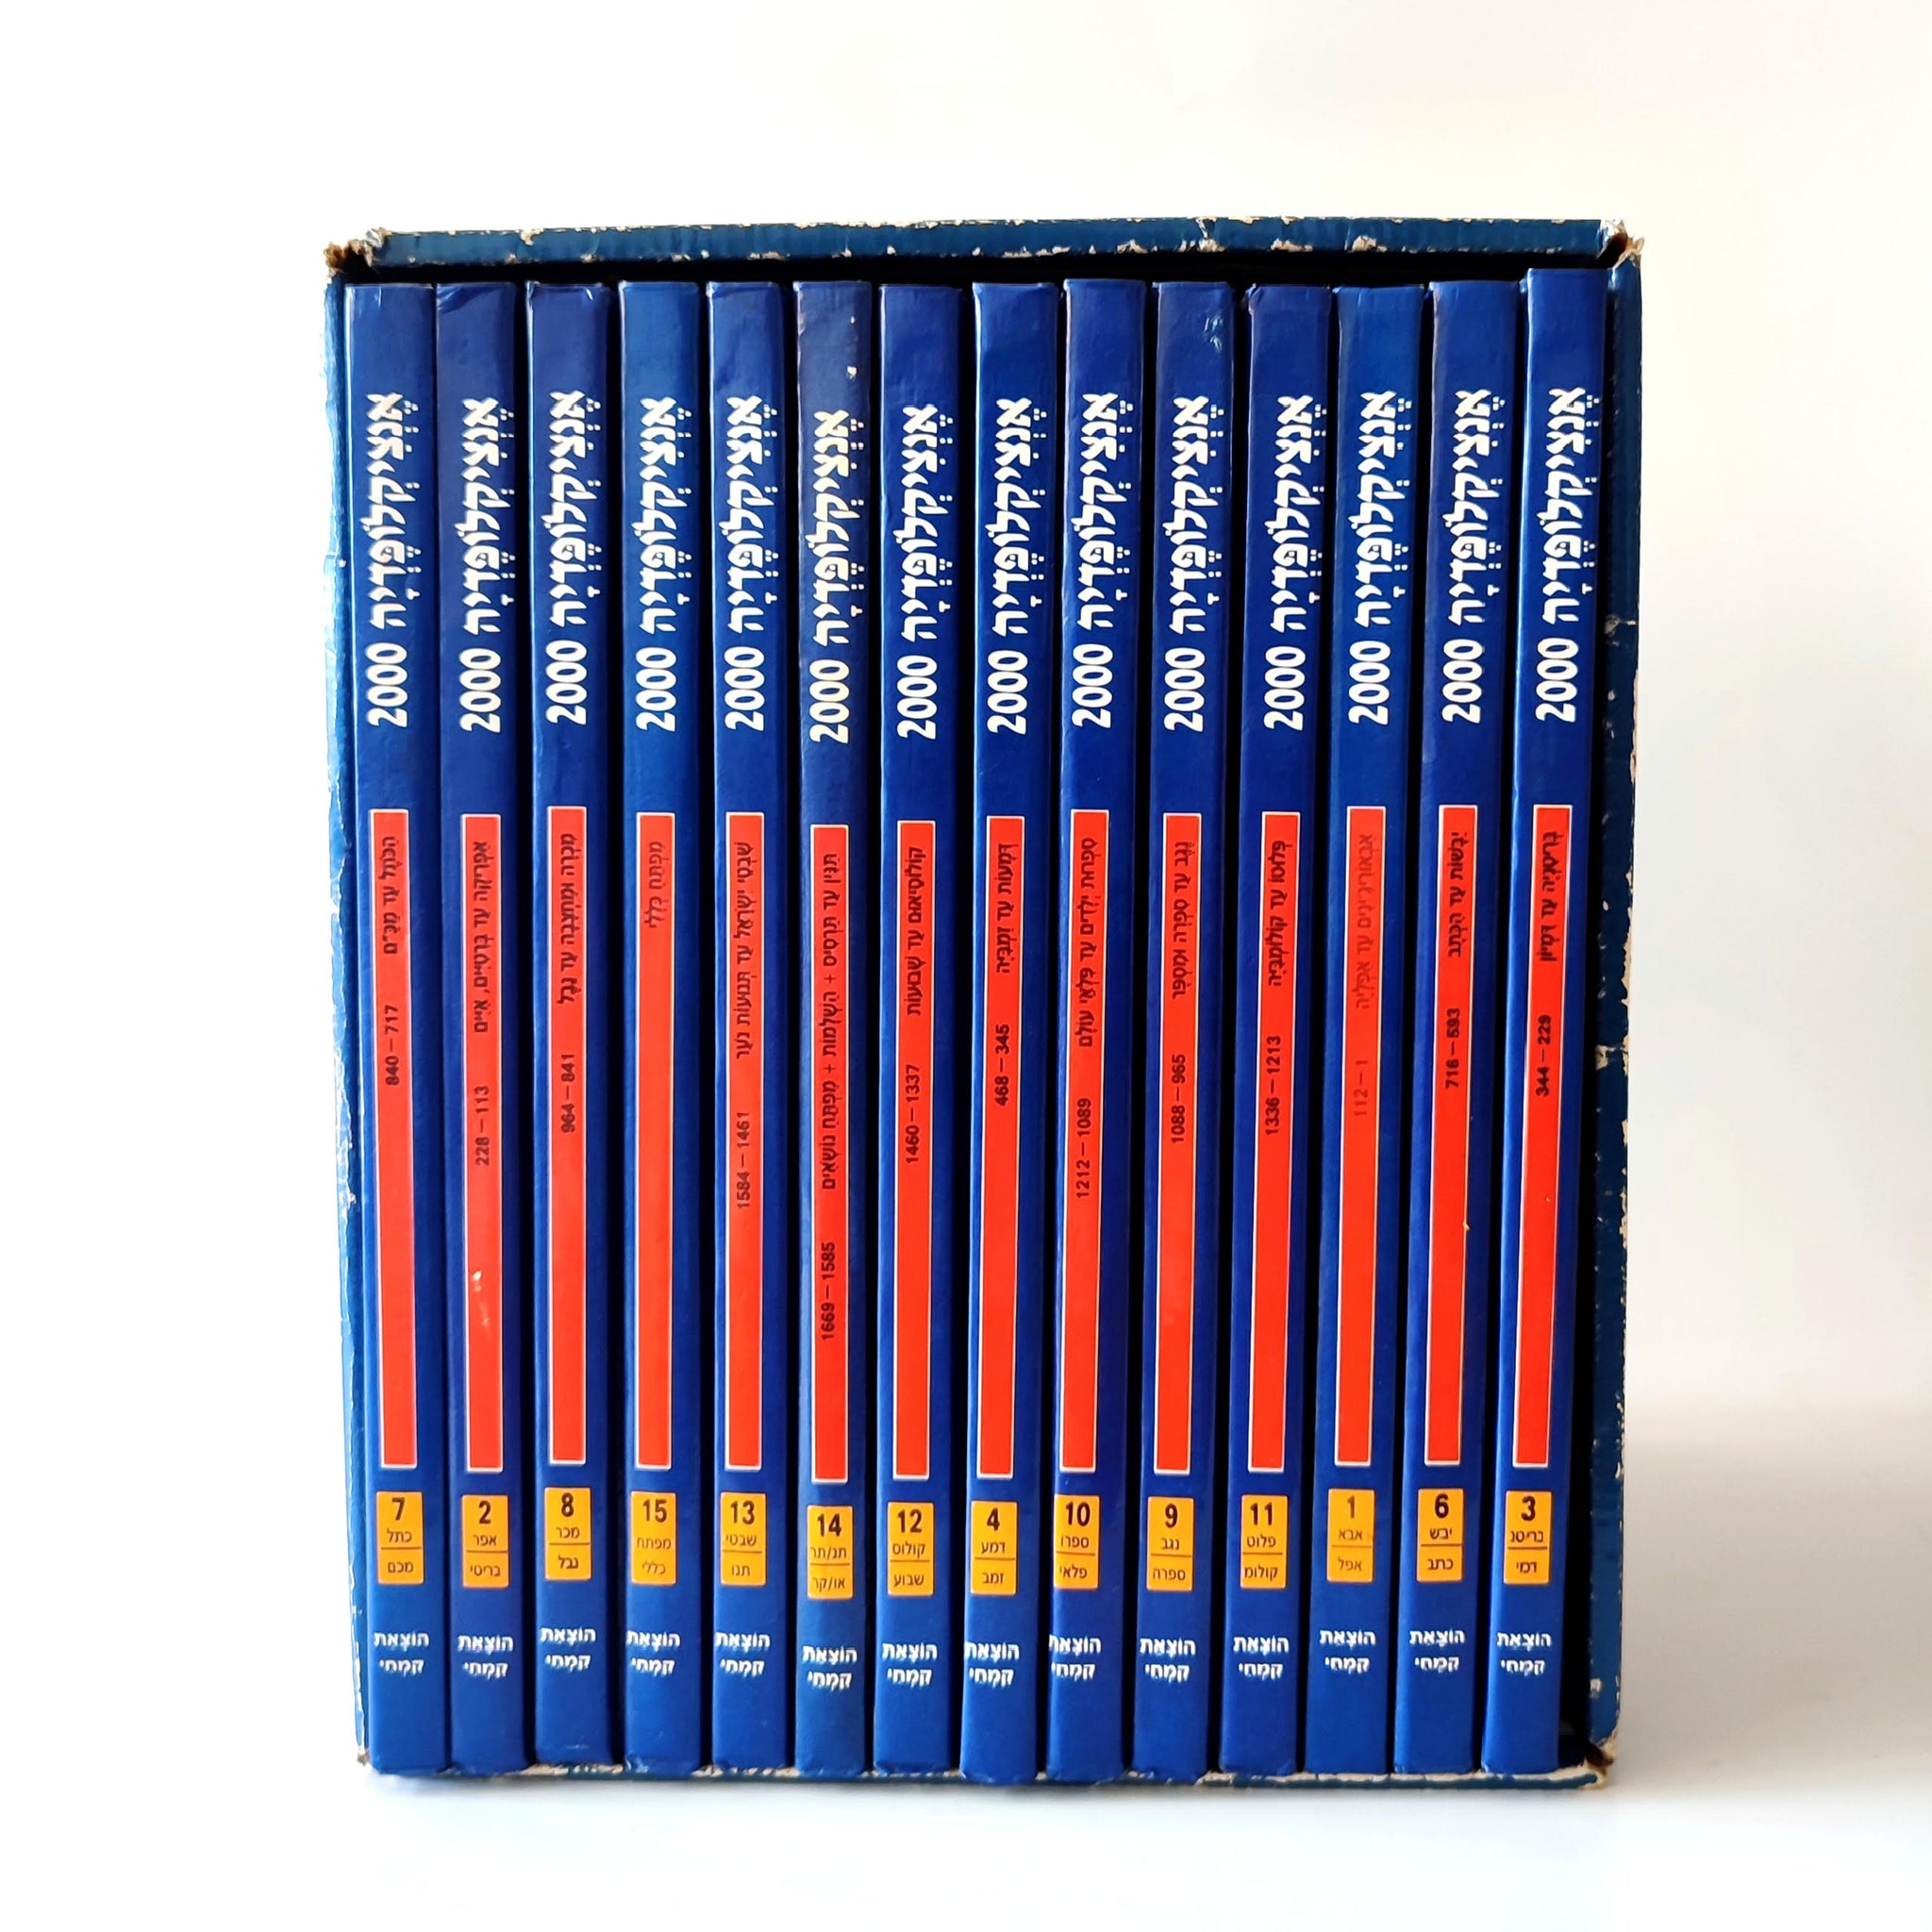 אנציקלופדיה 2000, 1997, אנציקלופדיה מצוירת מקיפה לקוראים צעירים